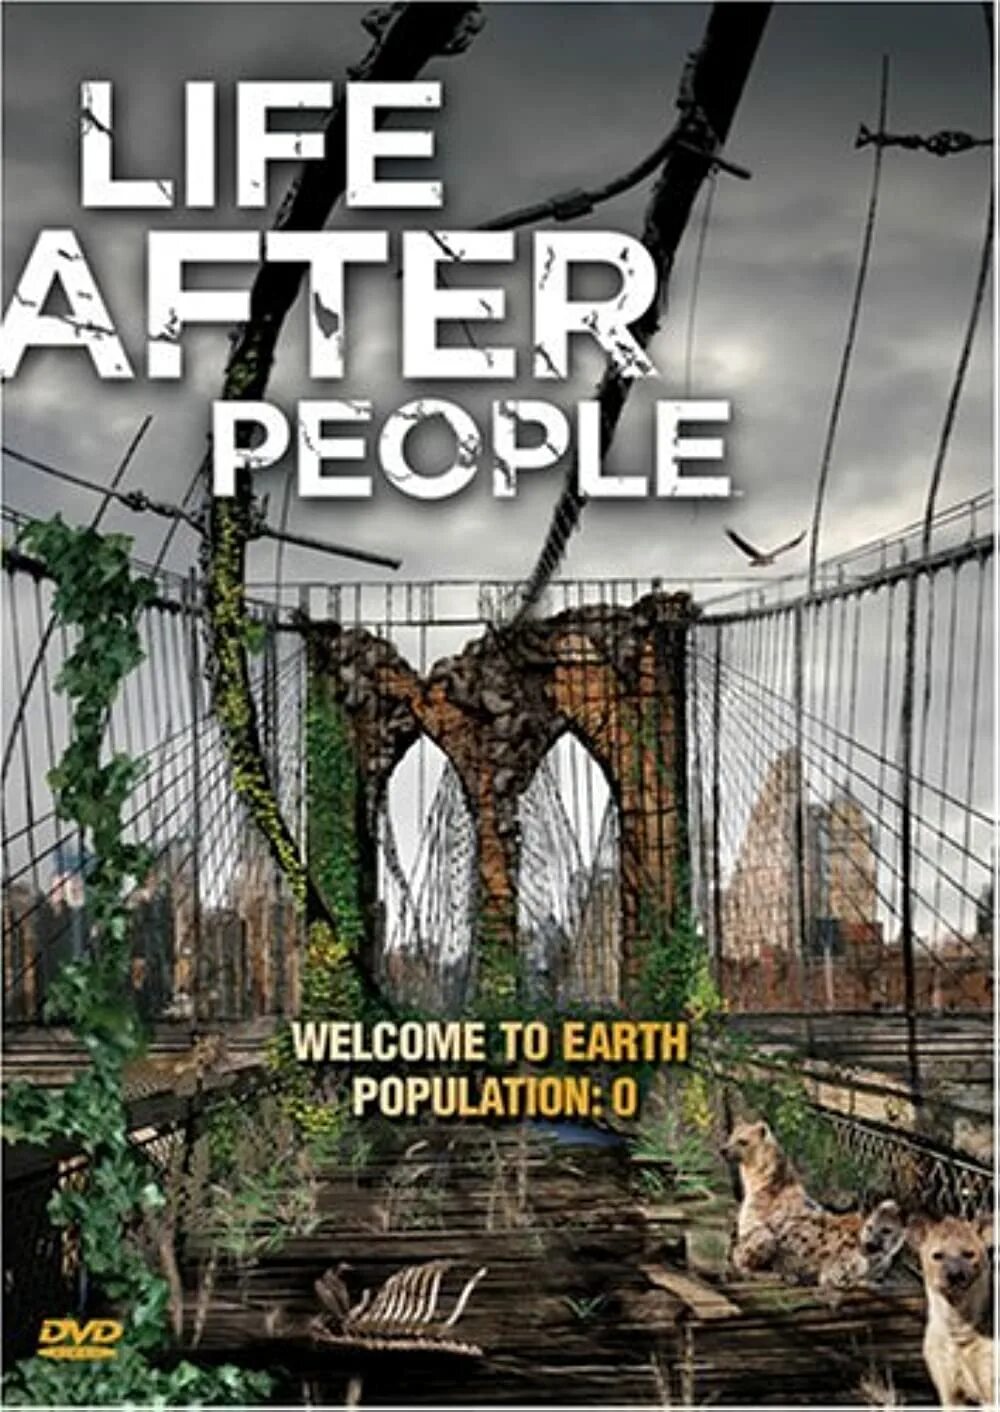 Live after people. Будущее планеты жизнь после людей 2008. Жизнь после людей (Life after people) (2019).